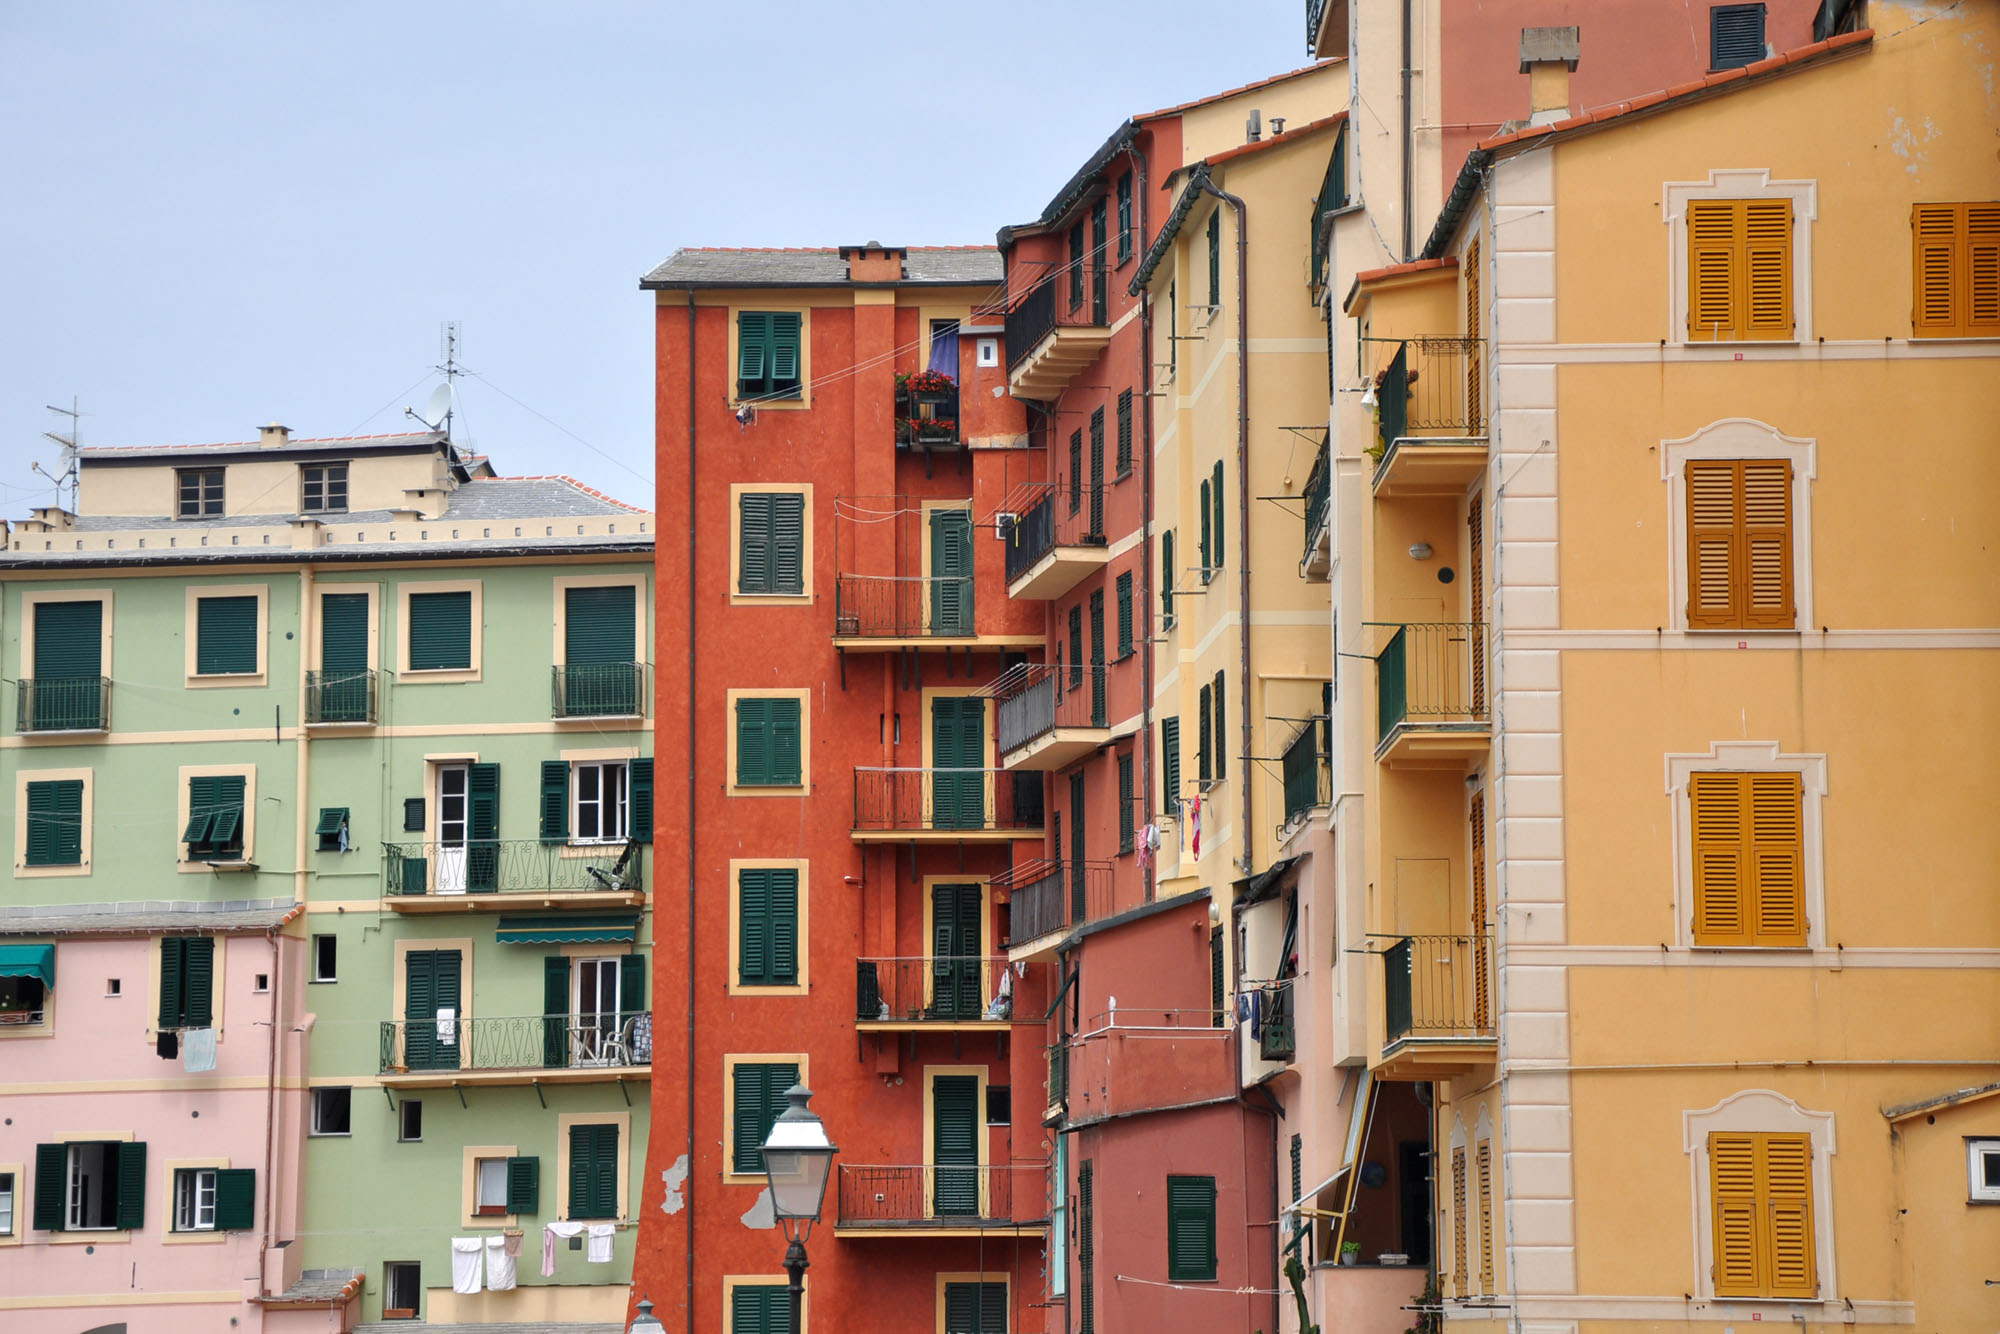 De kleurrijke huizen van Camogli